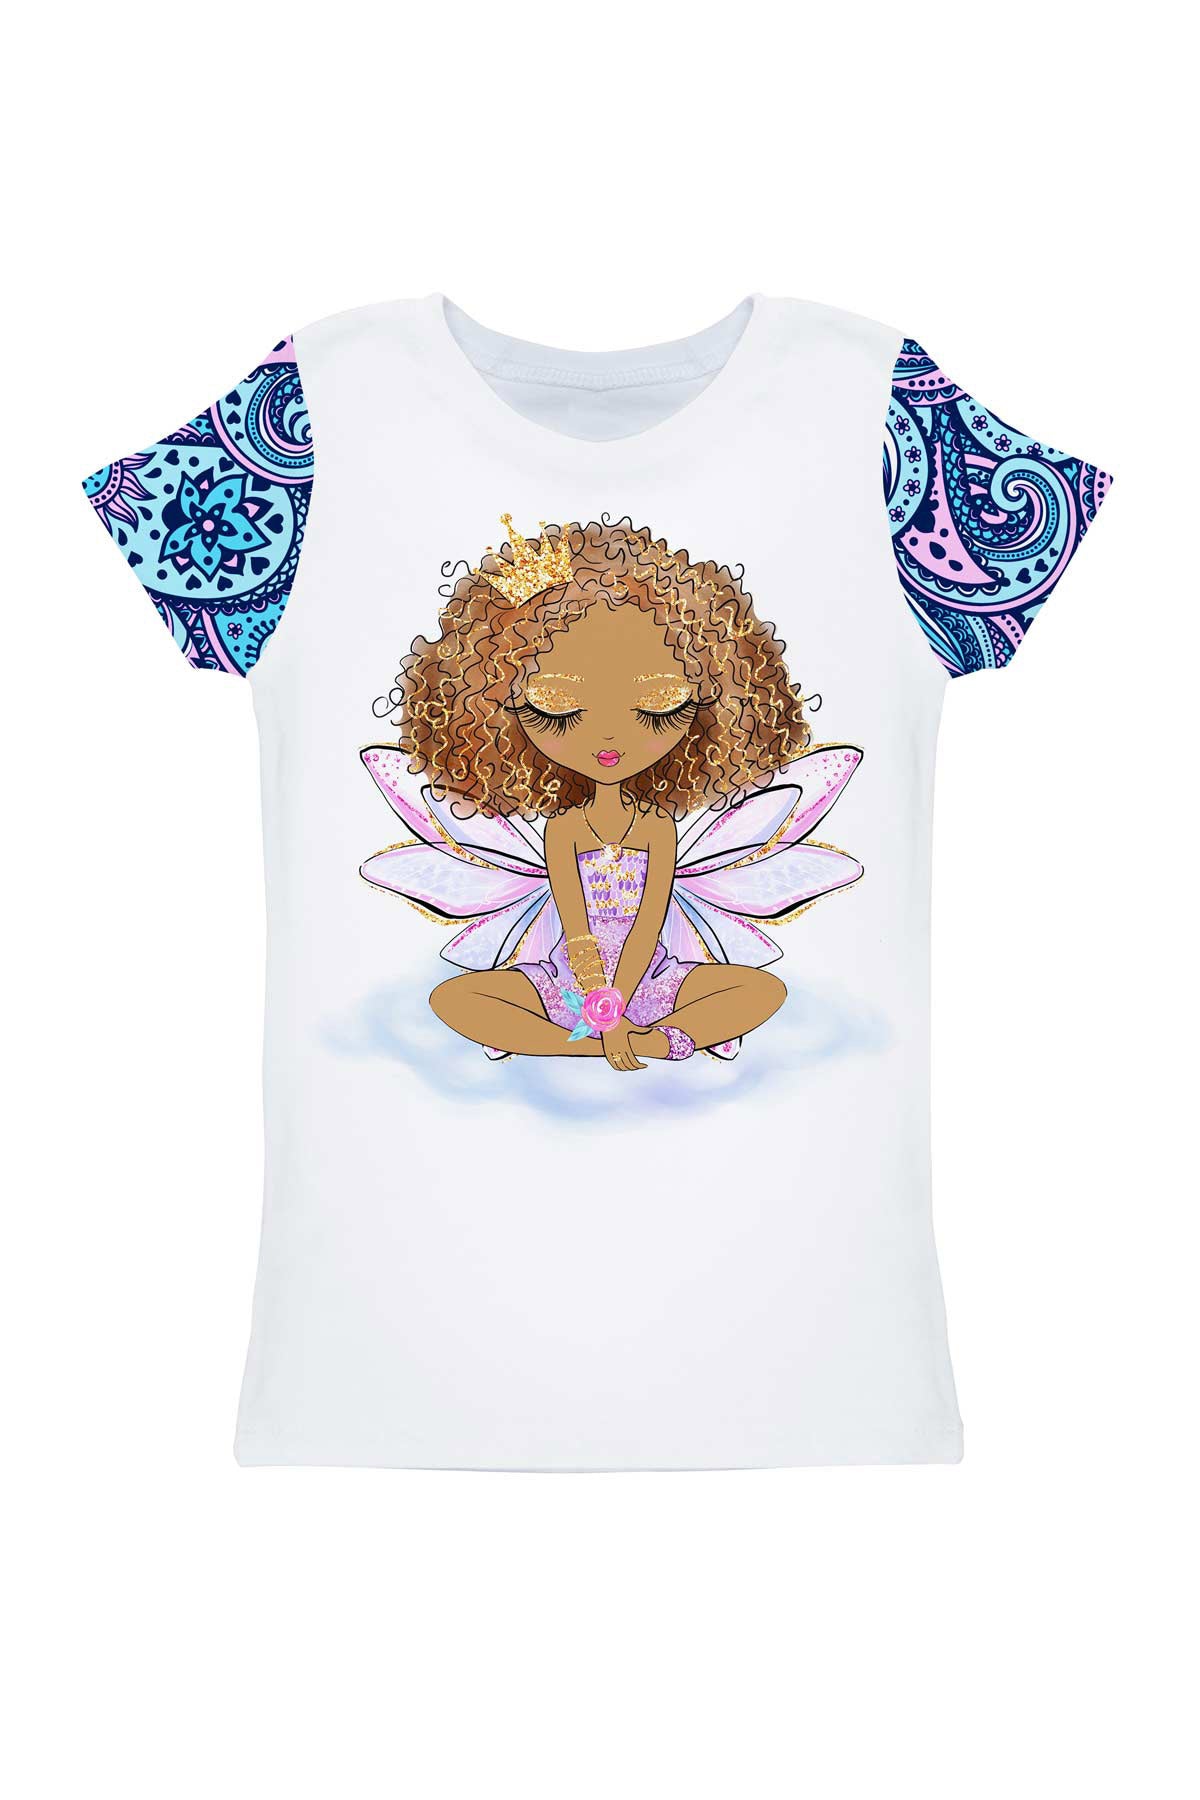 Sensation Zoe White Gold Fairy Print Cute Designer T-Shirt - Girls - Pineapple Clothing